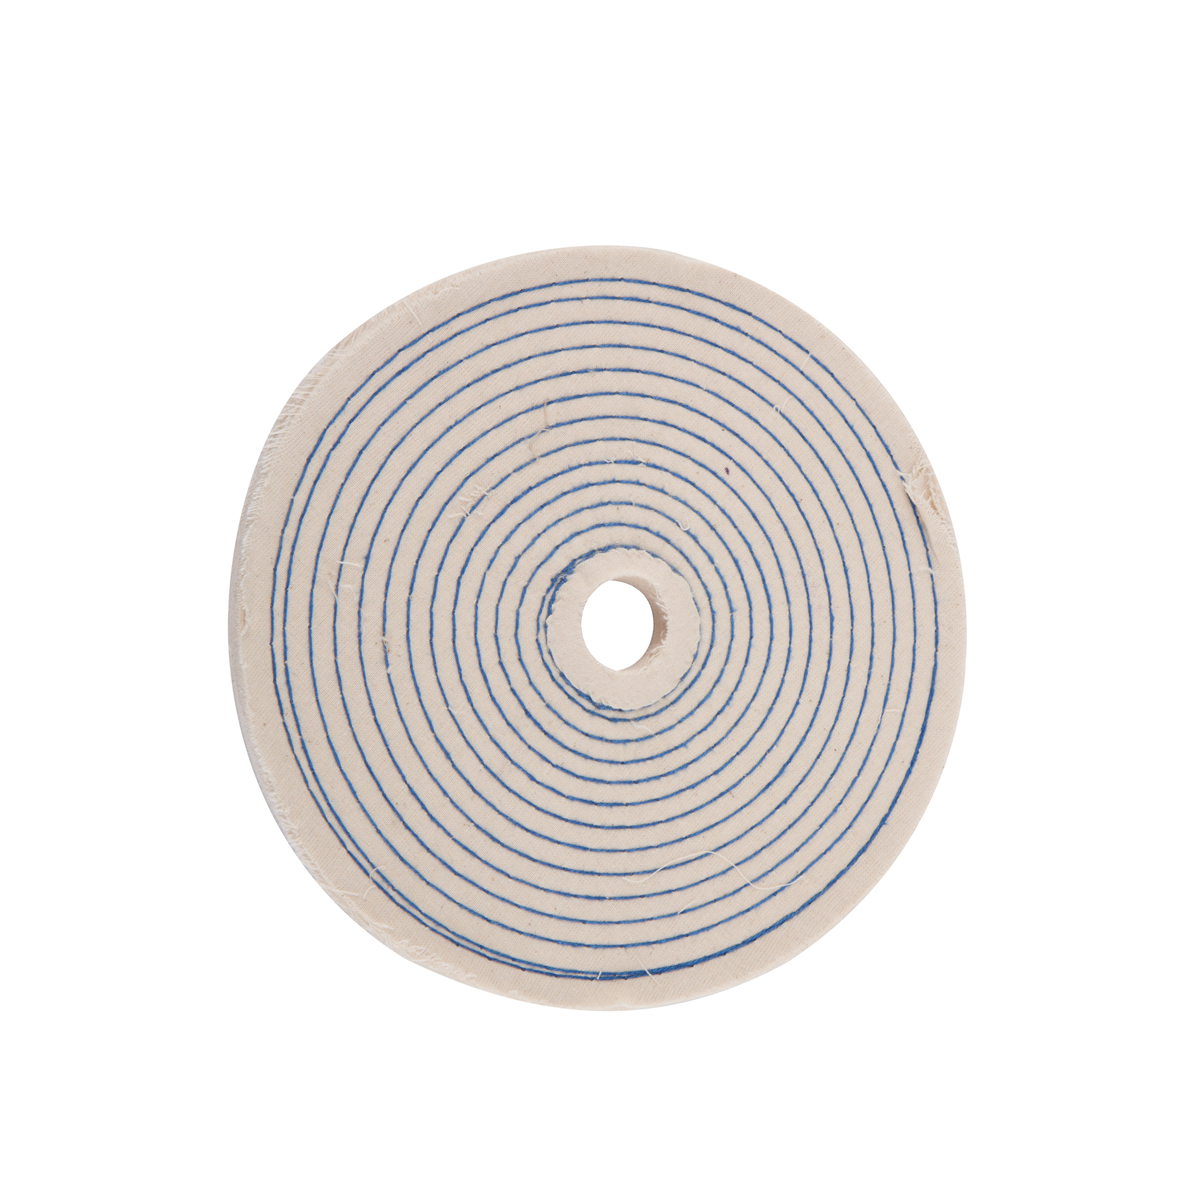 WARRIOR 8 in. Spiral Cotton Buffing Wheel - Item 69701 / 39406